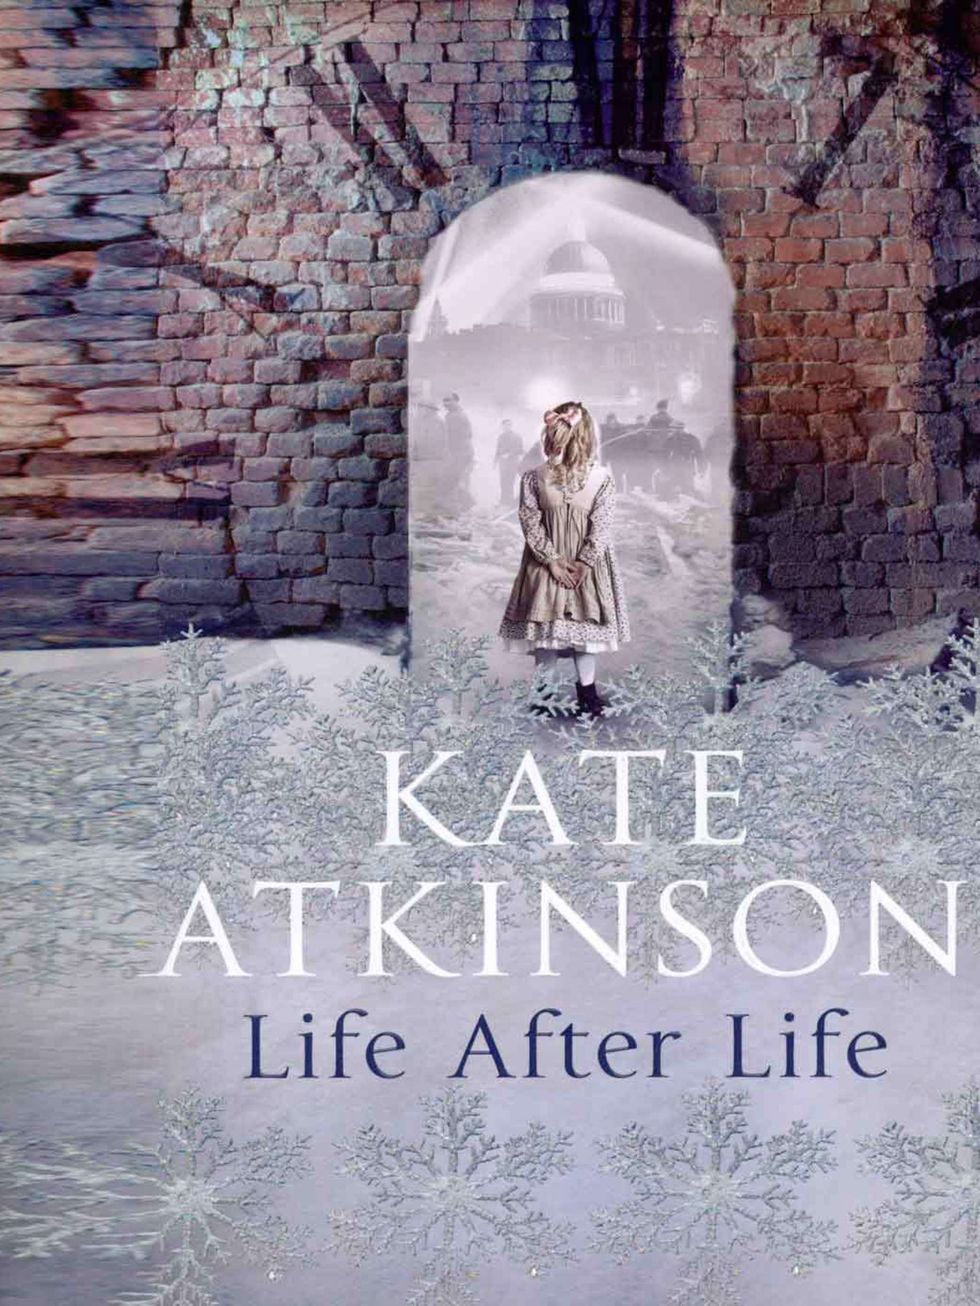 <p>Atkinsons novel Life After Life begins during a snowstorm in 1910. A baby is born and dies before she has had a chance at life. But what if the end is not final? Given another chance, would you want to take it?</p>